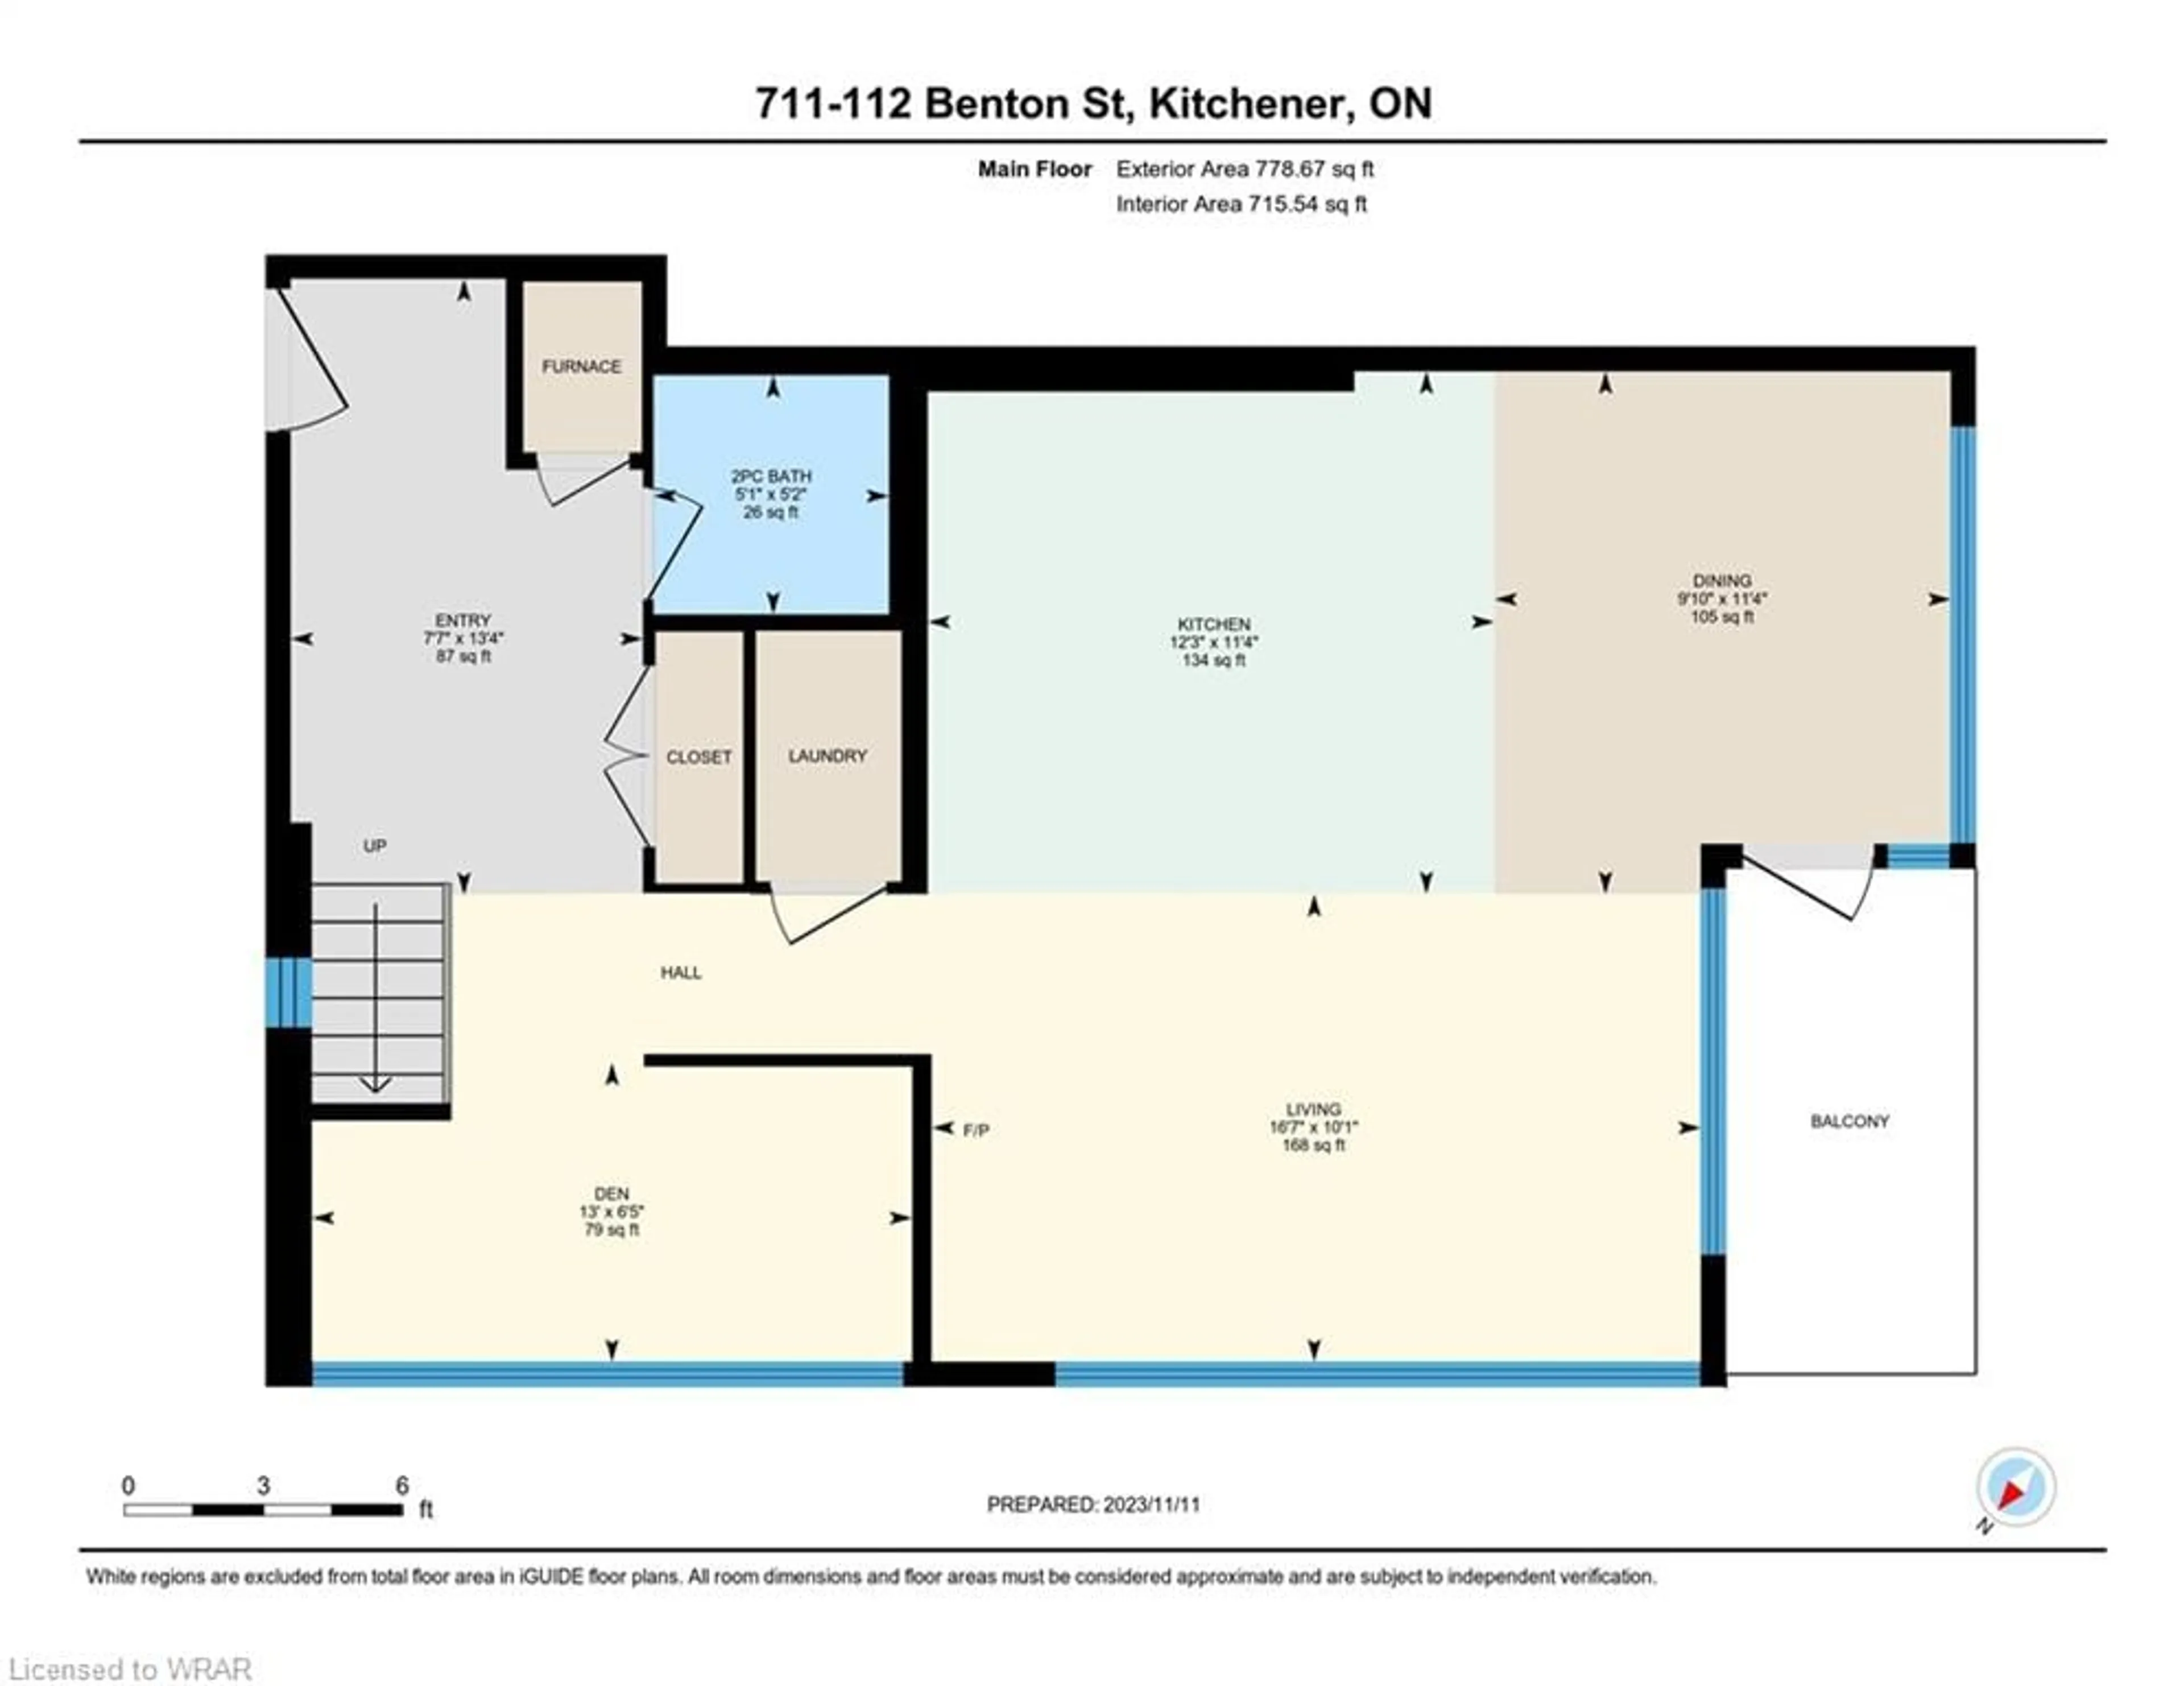 Floor plan for 112 Benton St #711, Kitchener Ontario N2G 3H6